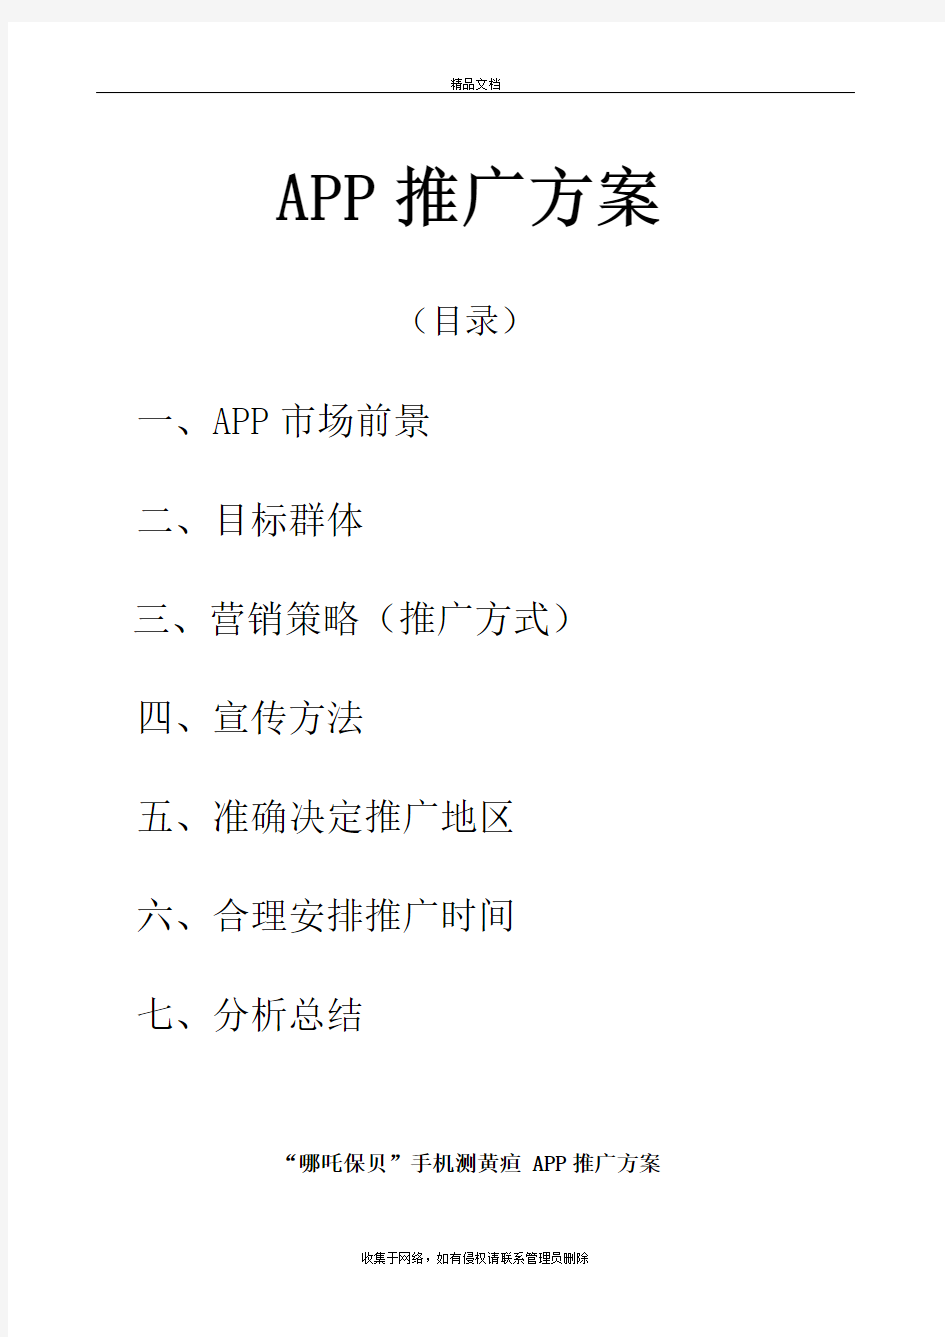 APP推广方案教程文件